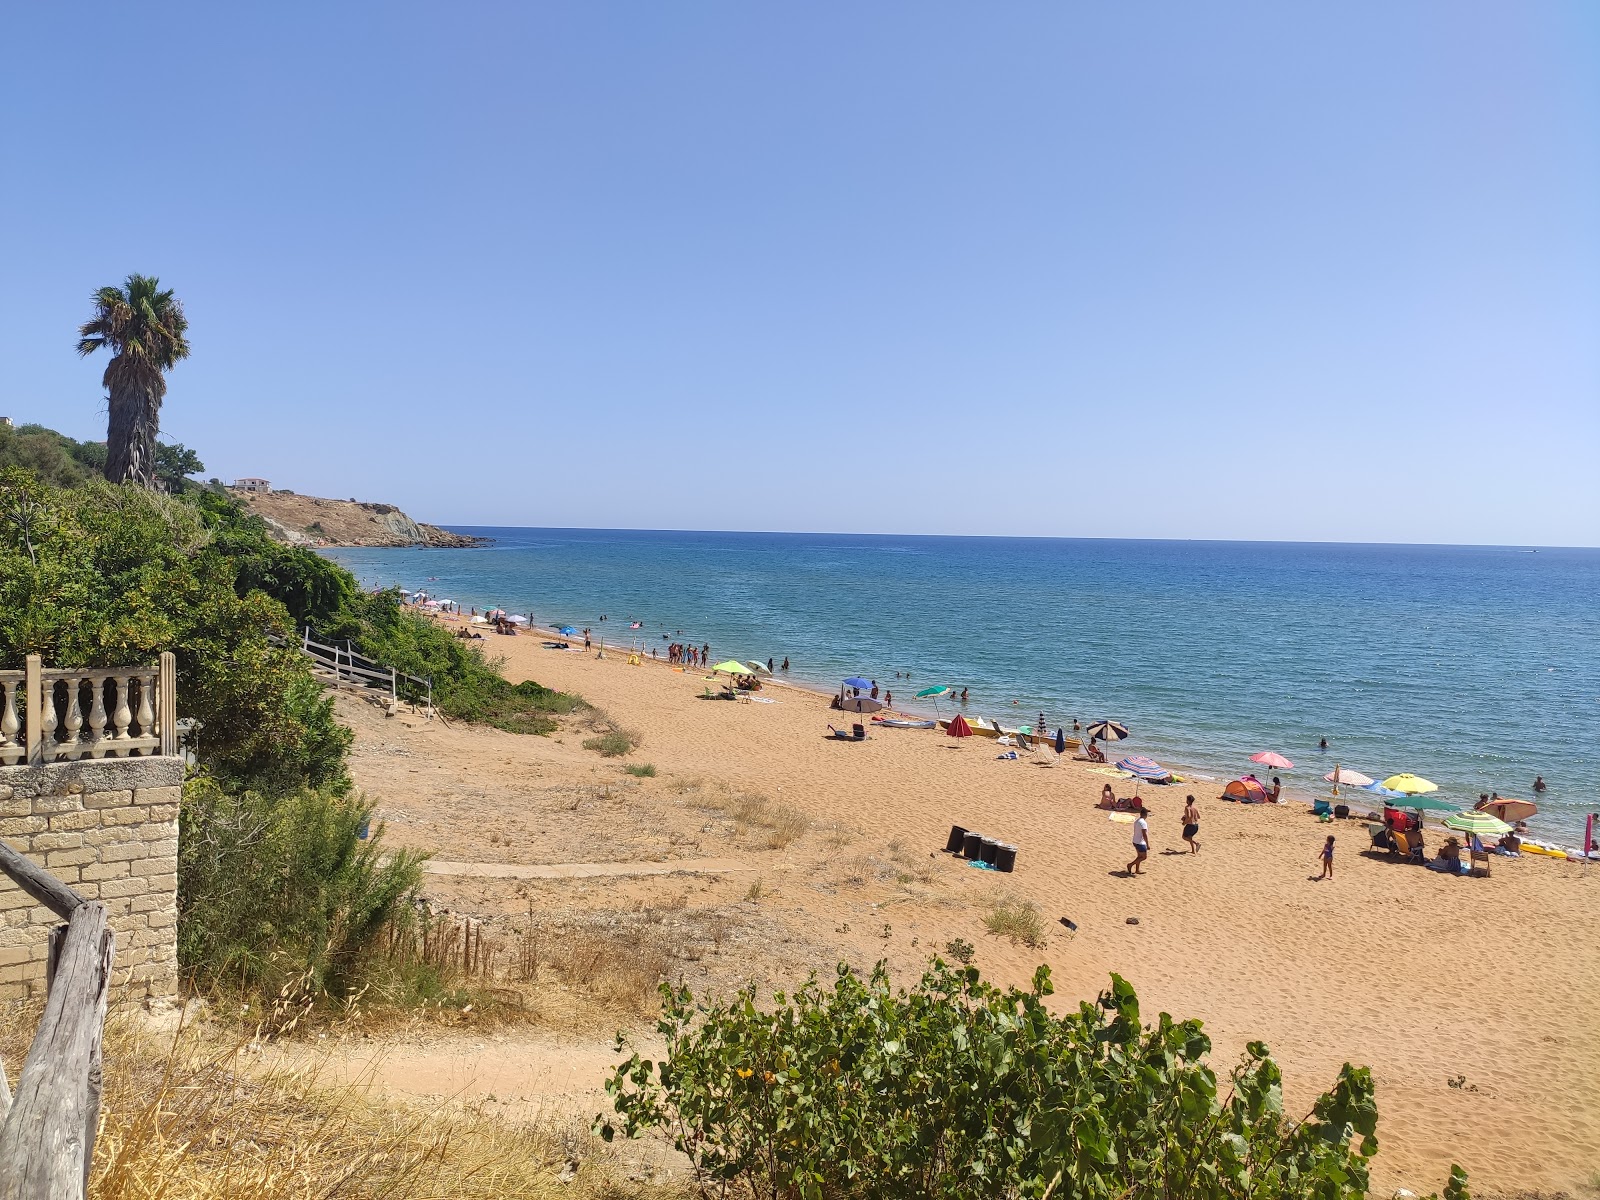 Foto af Spiaggia Le Cannella - populært sted blandt afslapningskendere